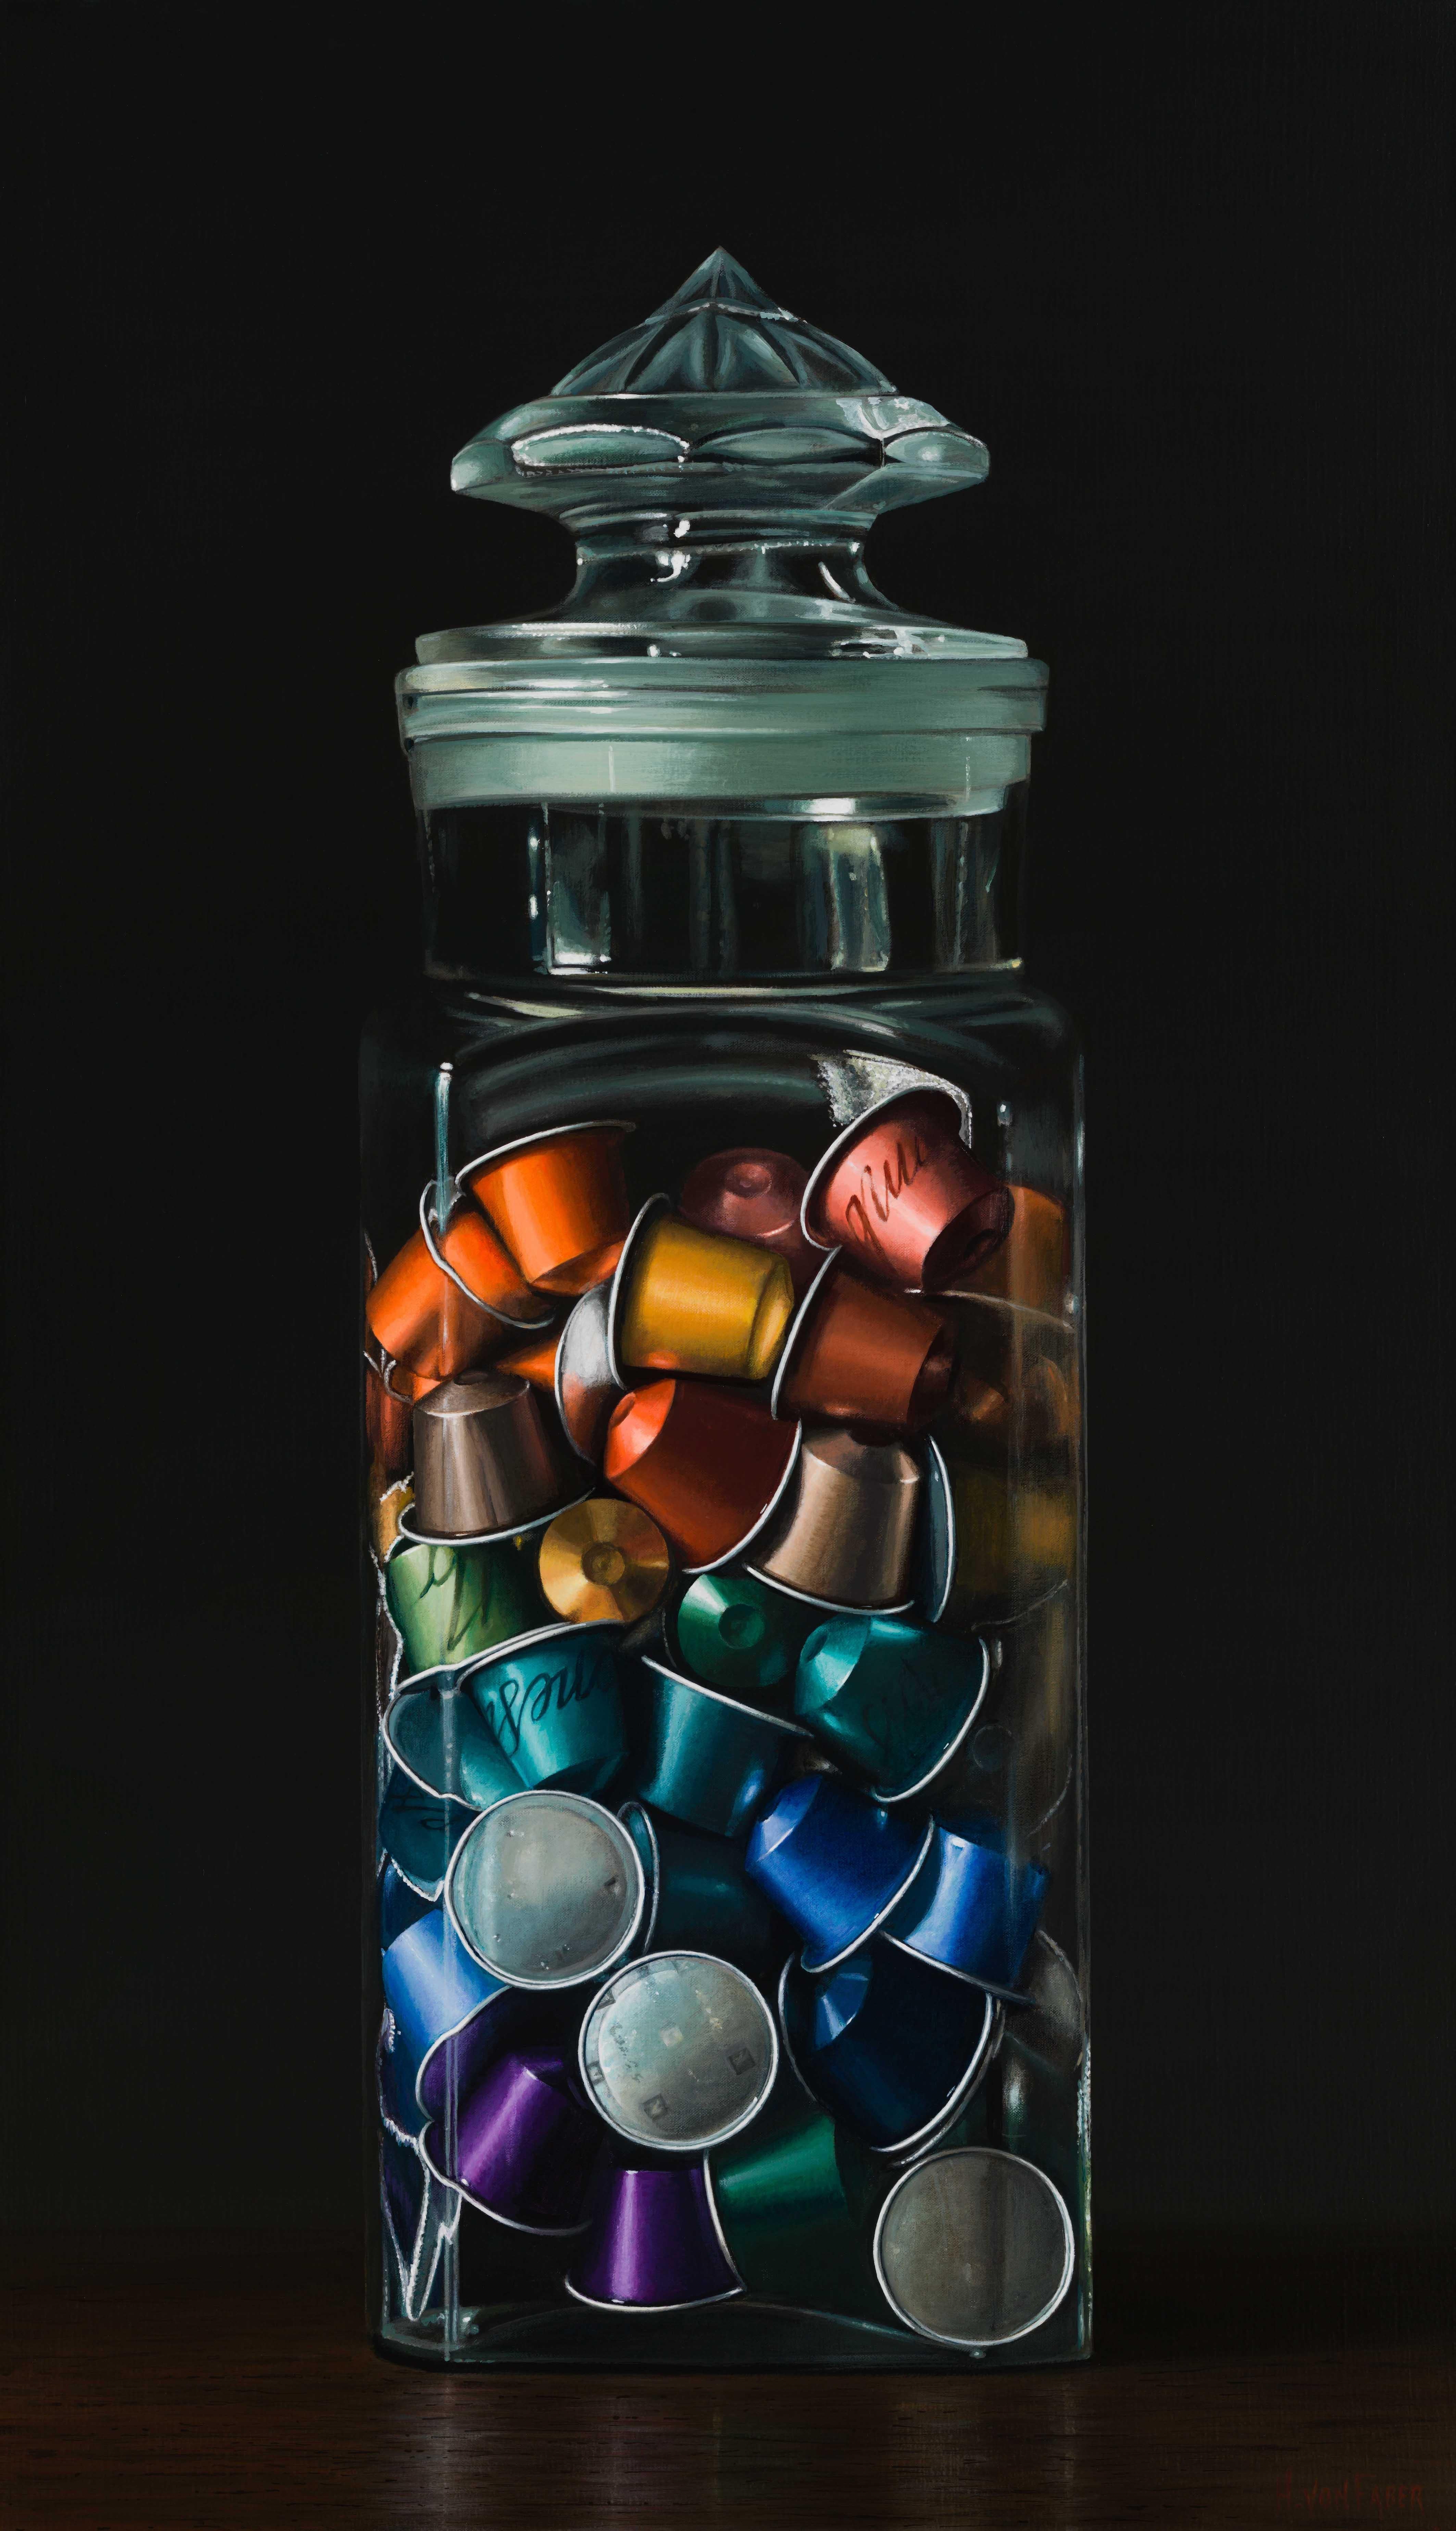 Heidi von Faber Still-Life Painting - Coffeecups - Heidi Von Faber, 21st Century Contemporary Dutch Still-Life